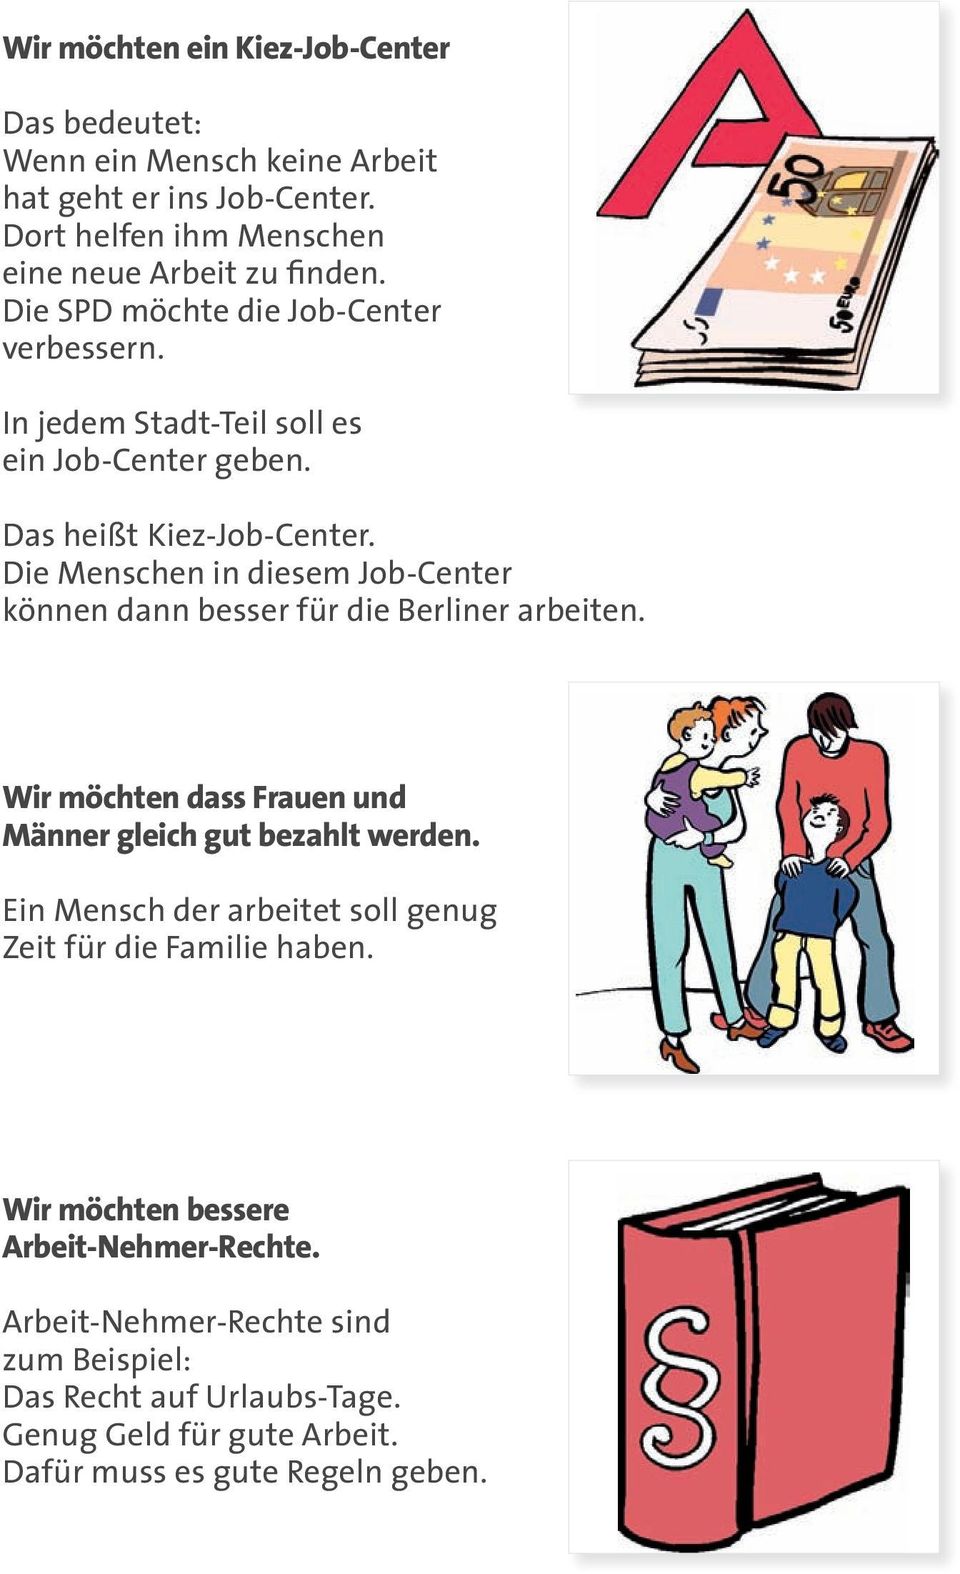 Die Menschen in diesem Job-Center können dann besser für die Berliner arbeiten. Wir möchten dass Frauen und Männer gleich gut bezahlt werden.